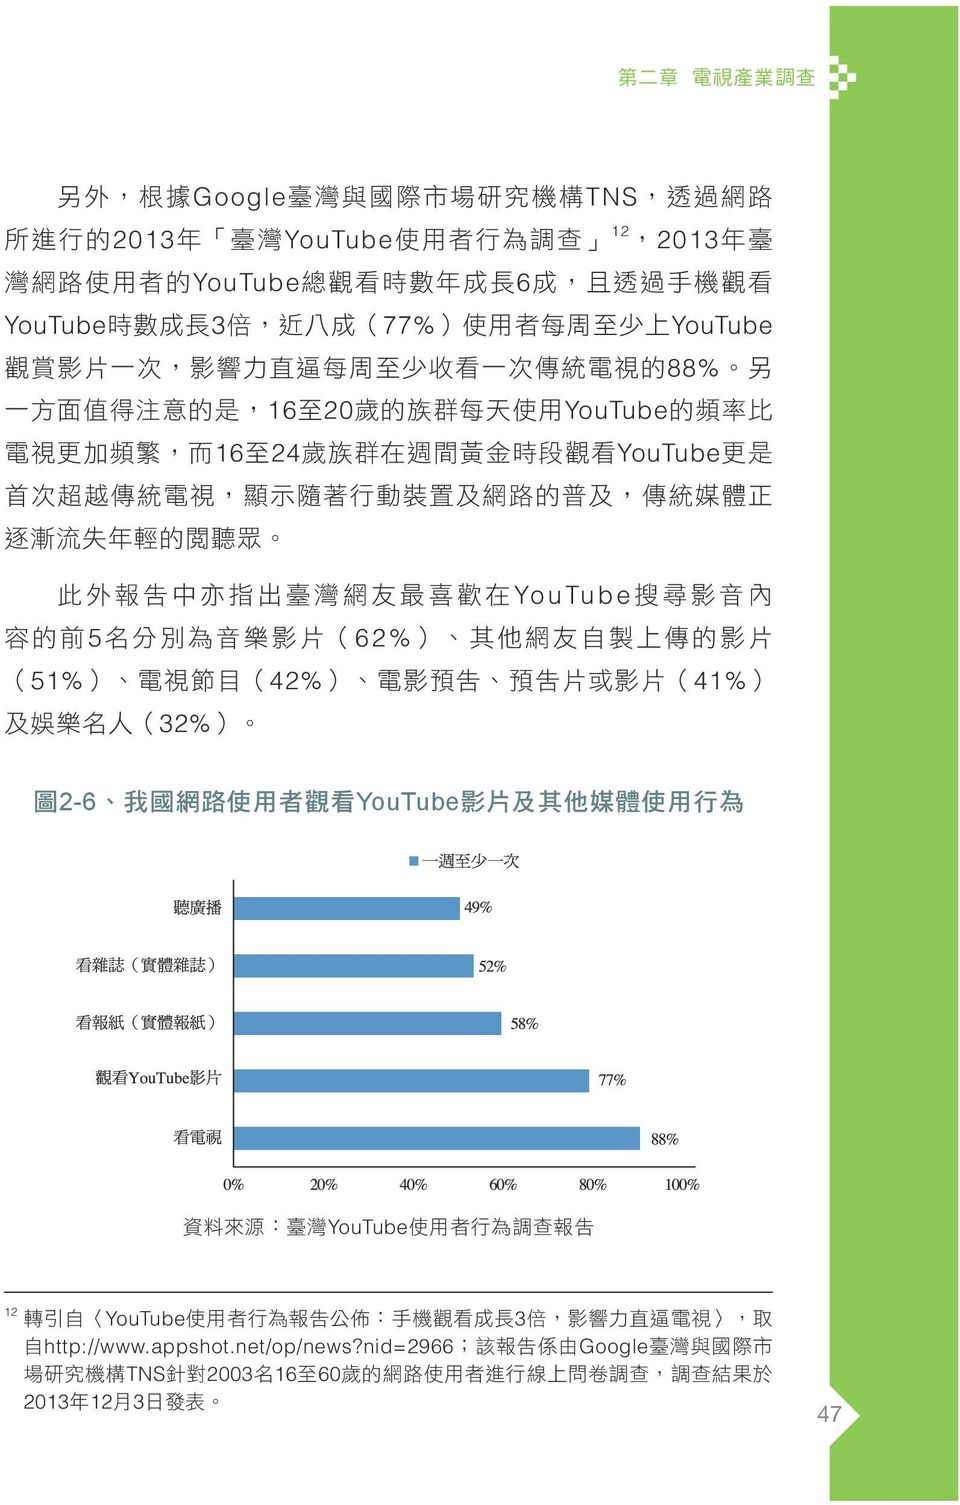 統 電 視, 顯 示 隨 著 行 動 裝 置 及 網 路 的 普 及, 傳 統 媒 體 正 逐 漸 流 失 年 輕 的 閱 聽 眾 此 外 報 告 中 亦 指 出 臺 灣 網 友 最 喜 歡 在 Yo u Tu b e 搜 尋 影 音 內 容 的 前 5 名 分 別 為 音 樂 影 片 (62%) 其 他 網 友 自 製 上 傳 的 影 片 (51%) 電 視 節 目 (42%) 電 影 預 告